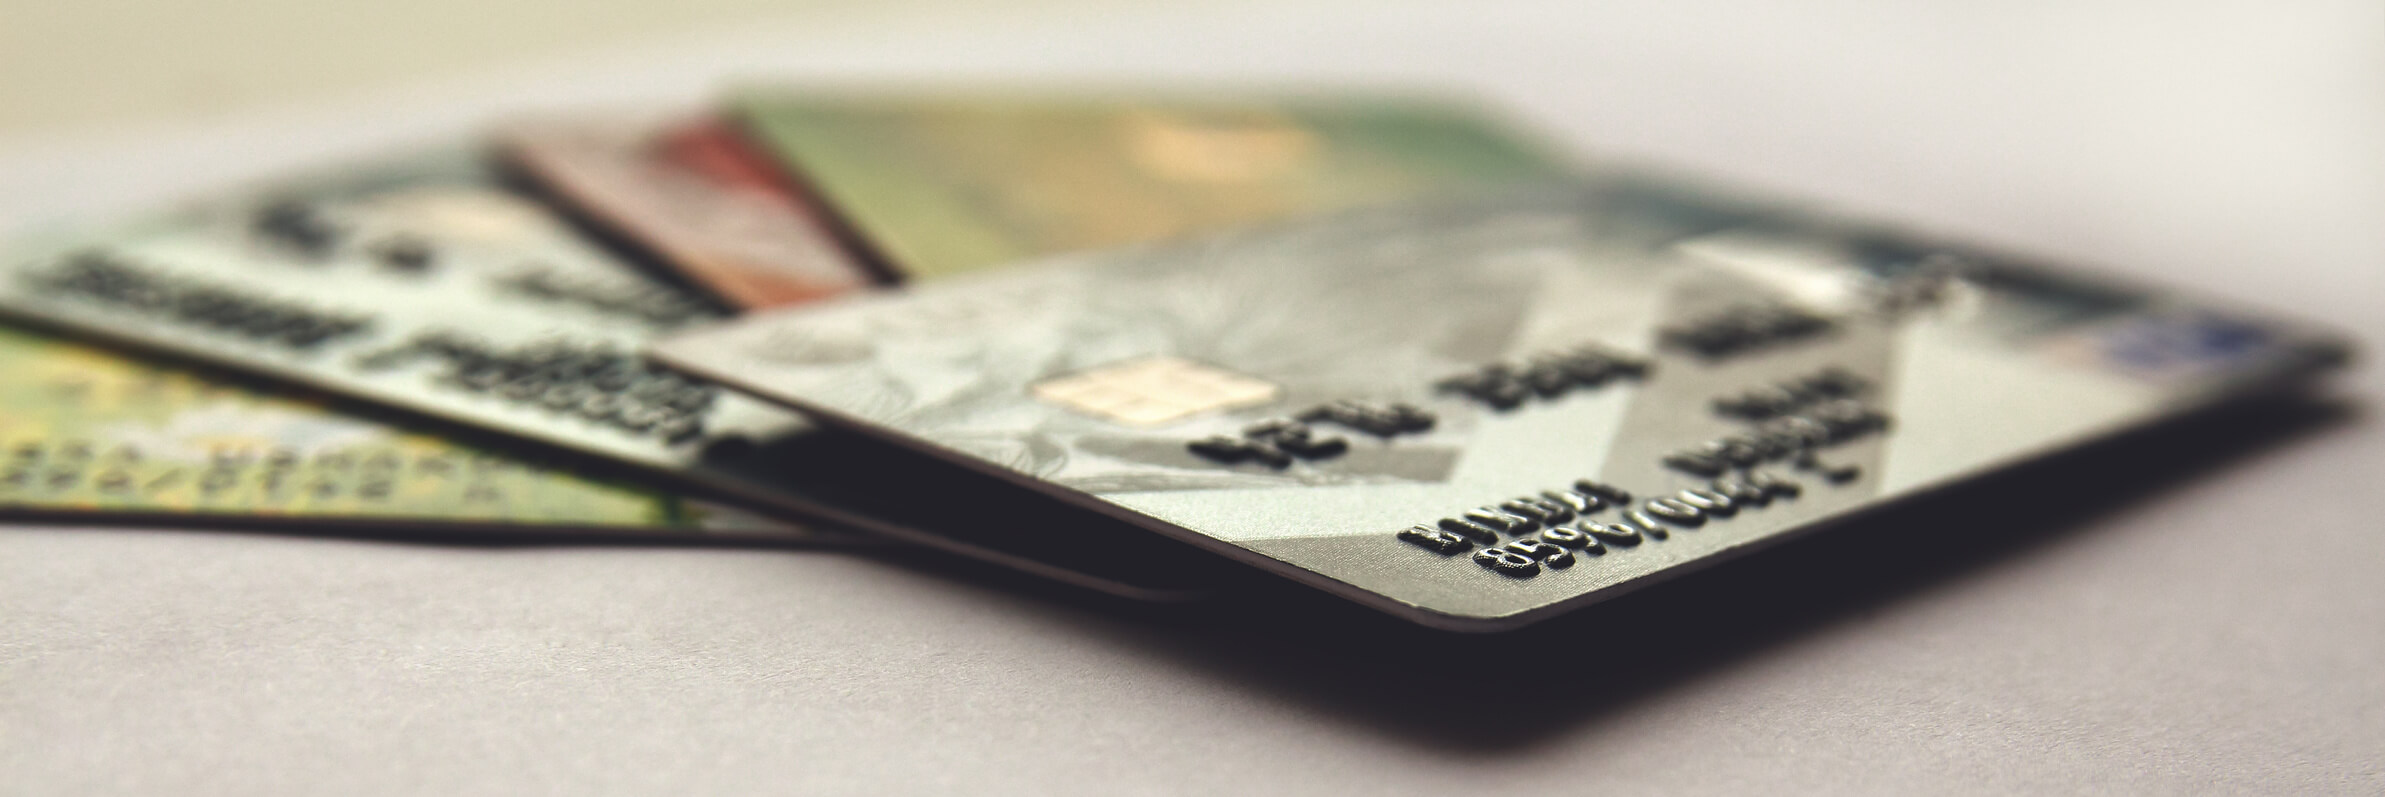 Klarna Card und Kreditkarte im Vergleich || Das sind die Vor- und Nachteile!